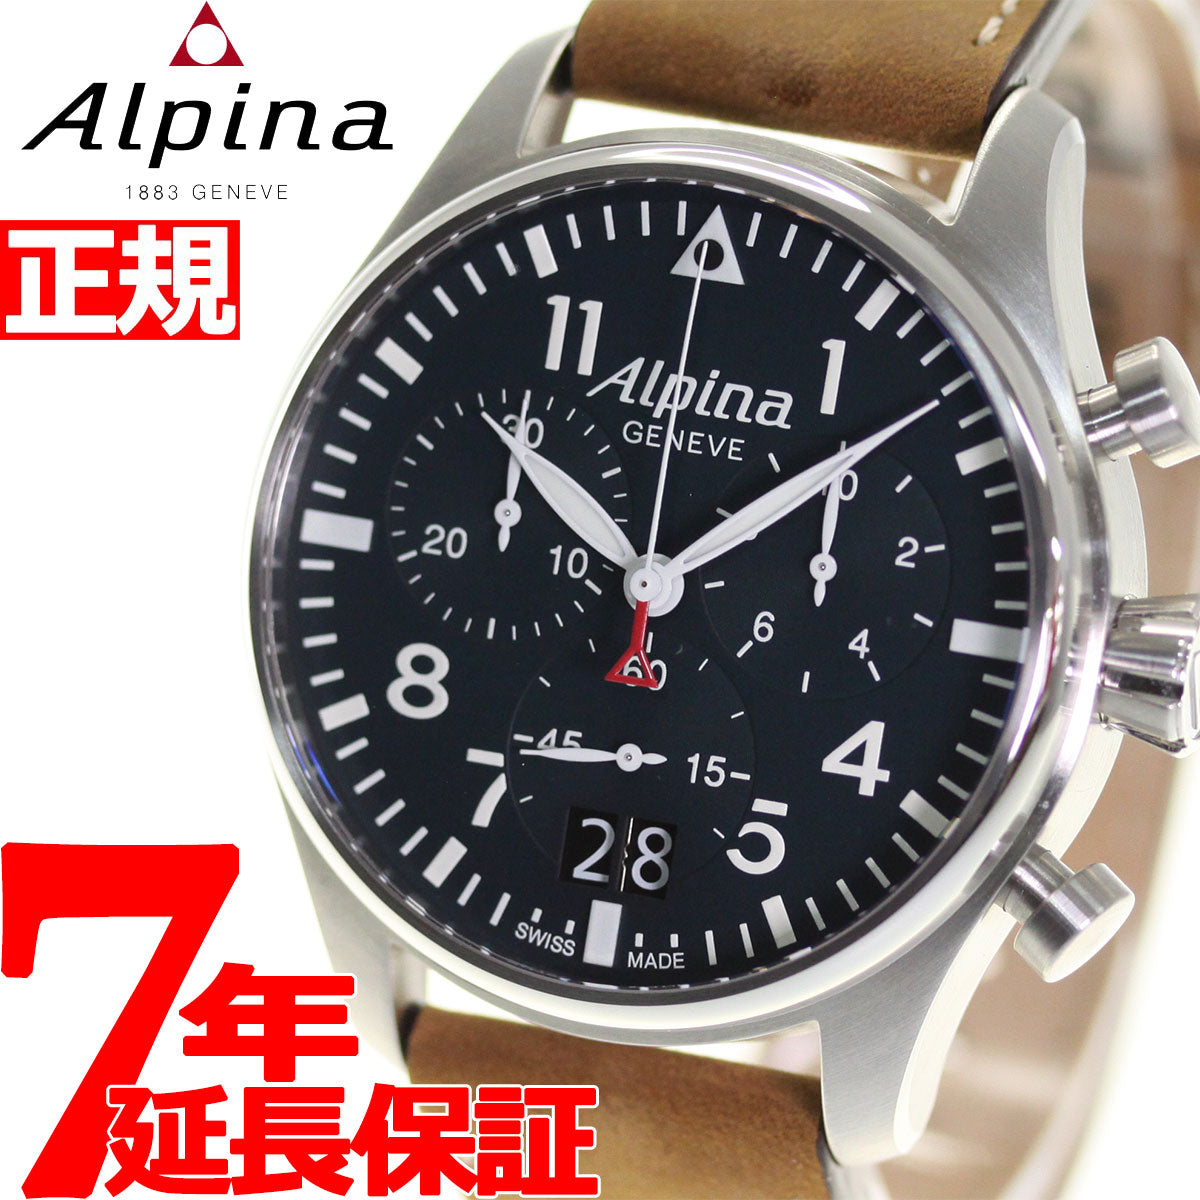 アルピナ ALPINA スタータイマー パイロット クロノグラフ ビッグデイト 腕時計 メンズ STARTIMER AL-372N4S6